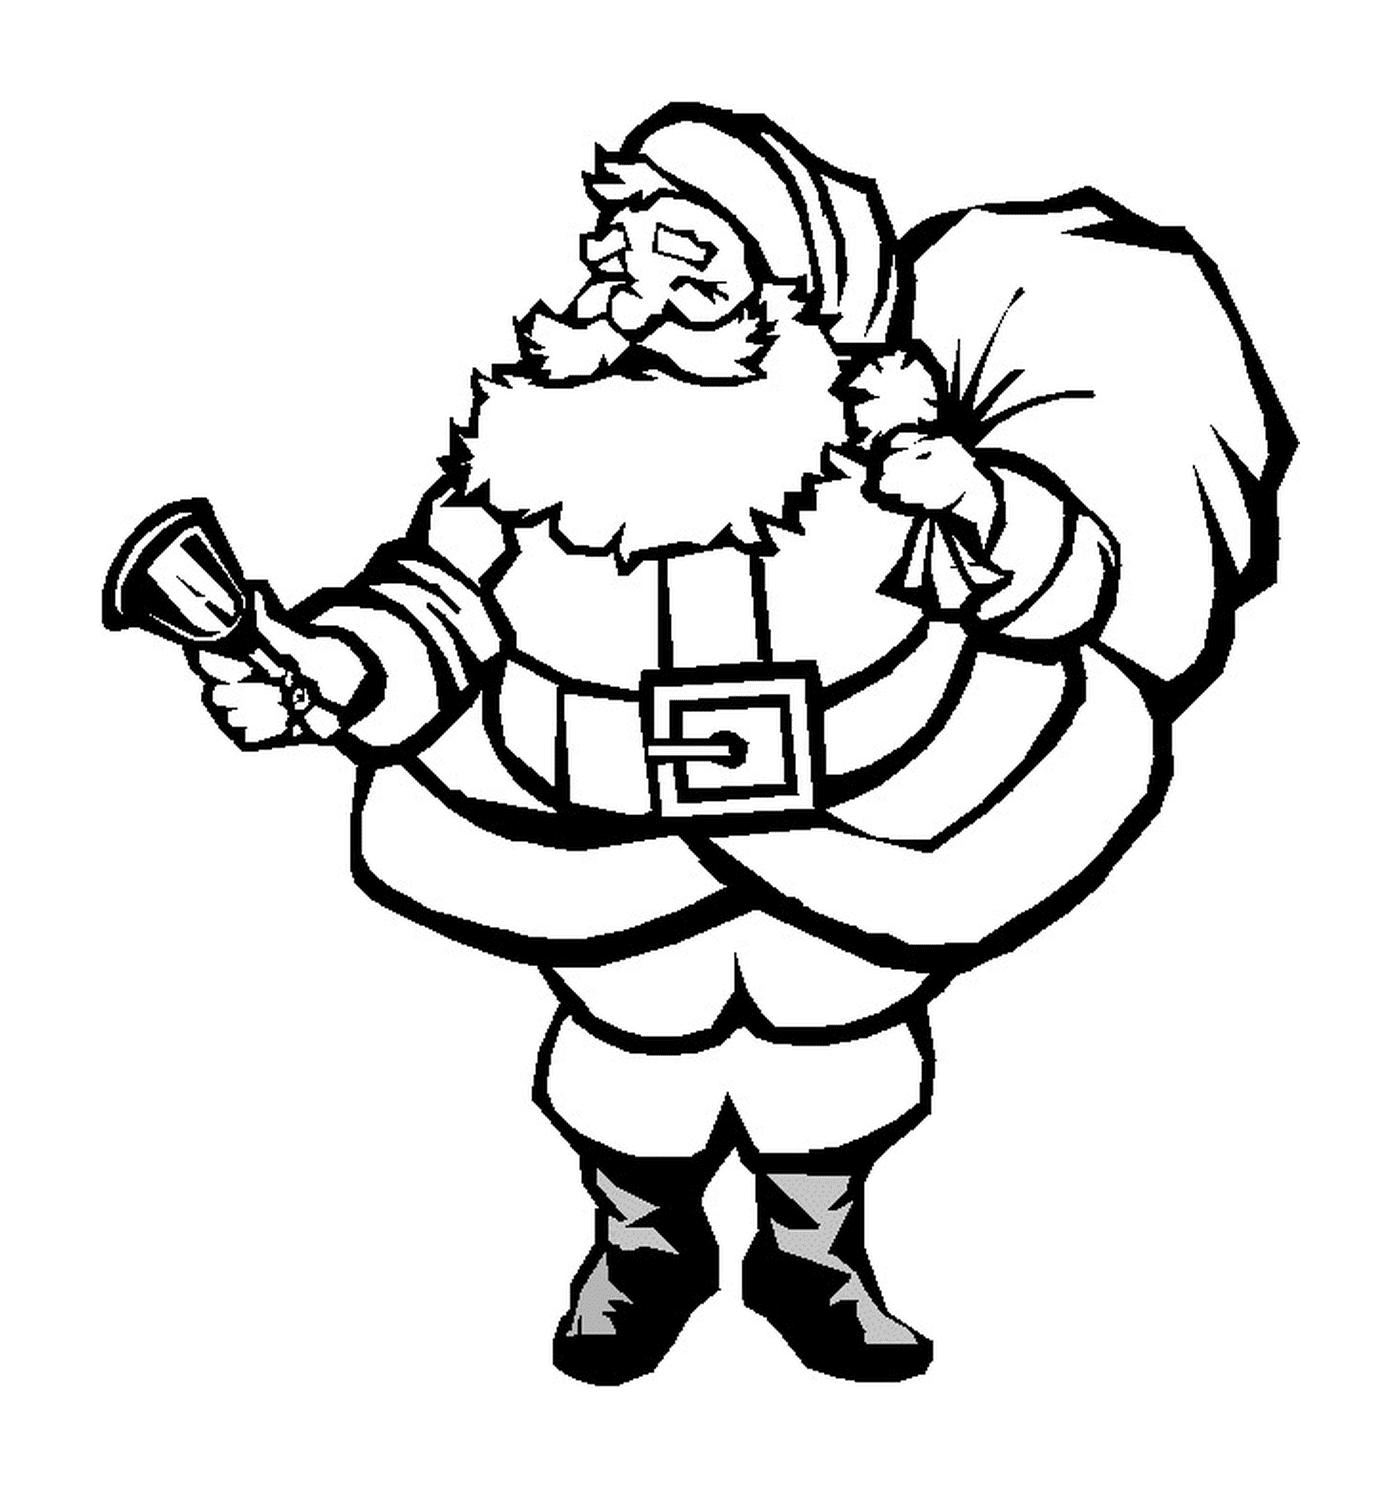  Santa Claus festive 